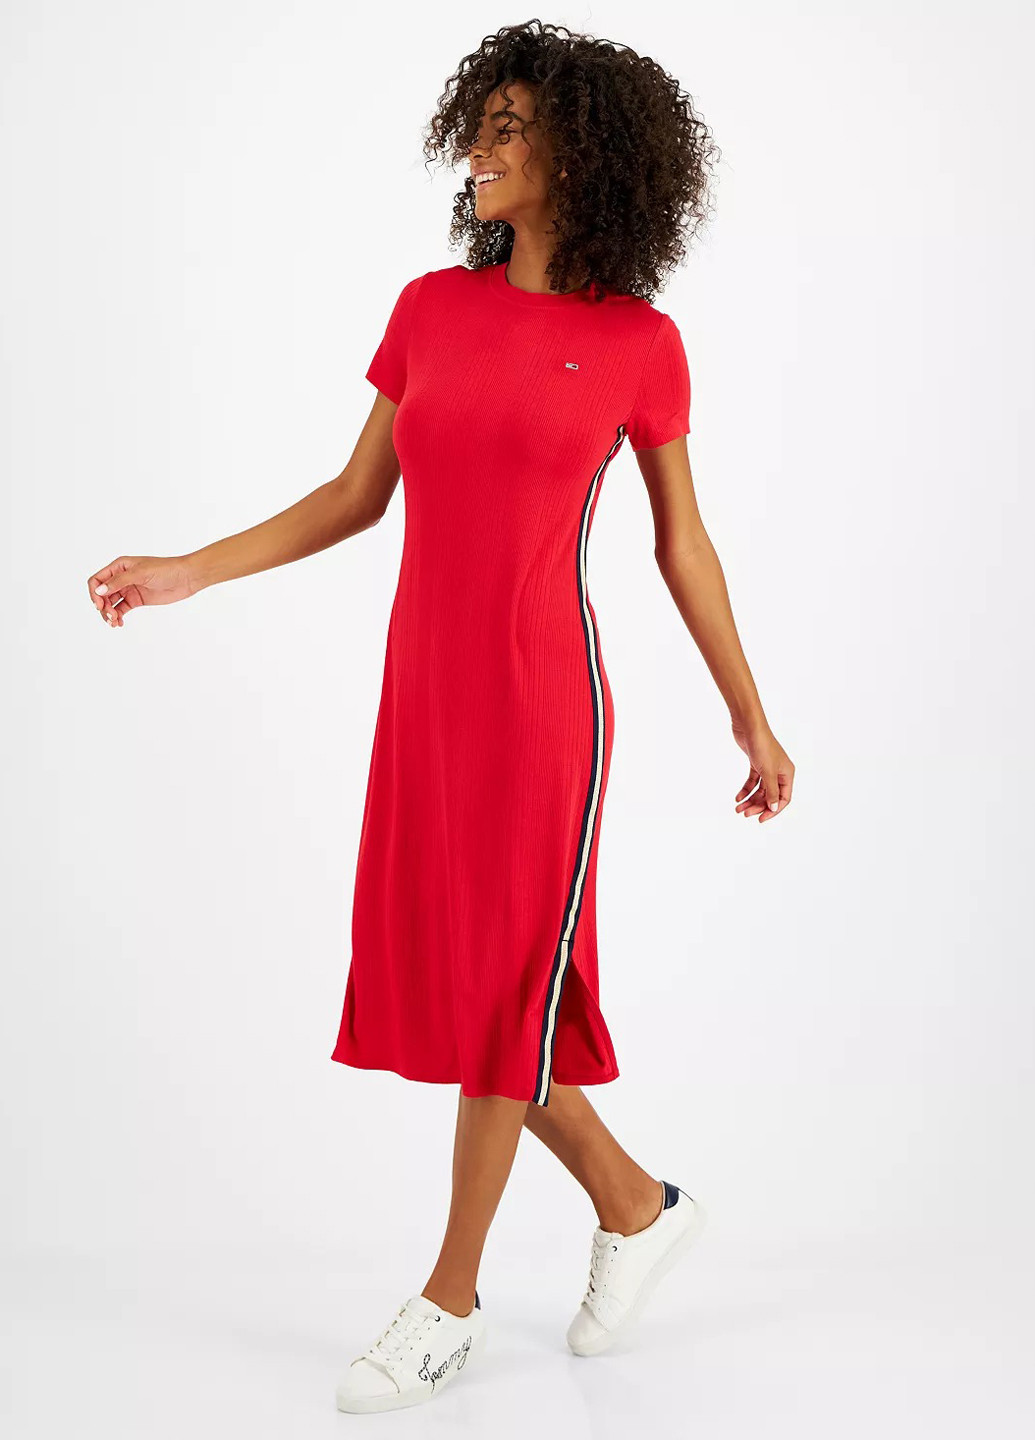 Красное кэжуал, спортивное платье платье-футболка Tommy Hilfiger однотонное